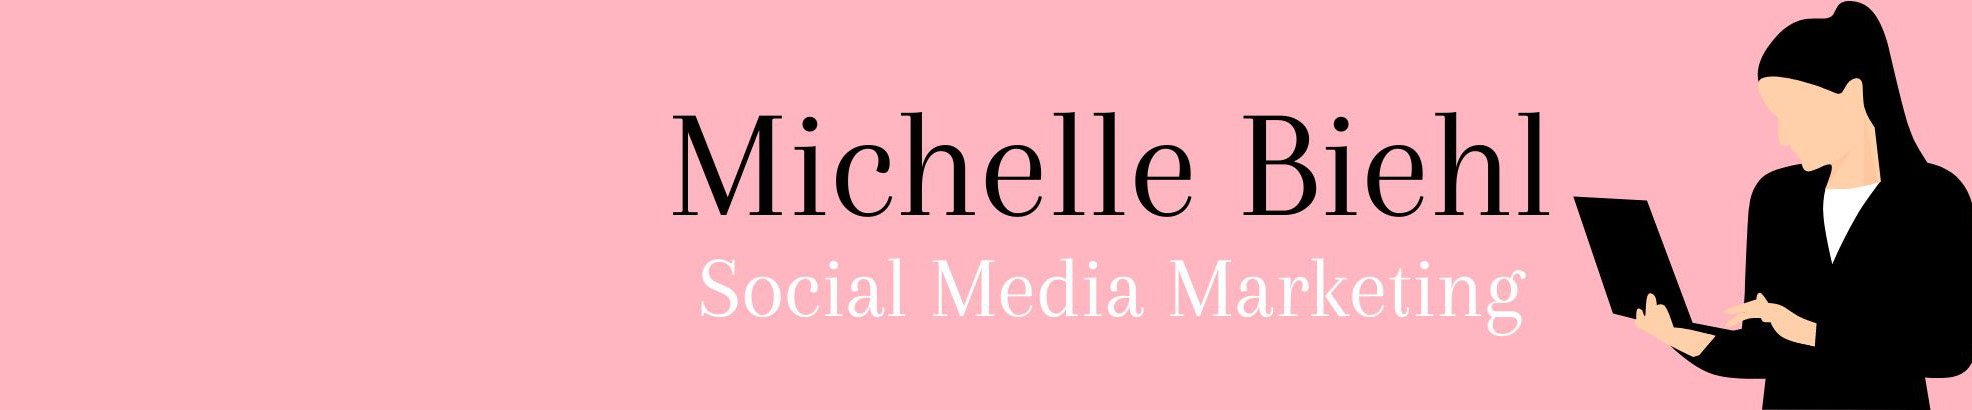 Biehl Michelle's profile banner